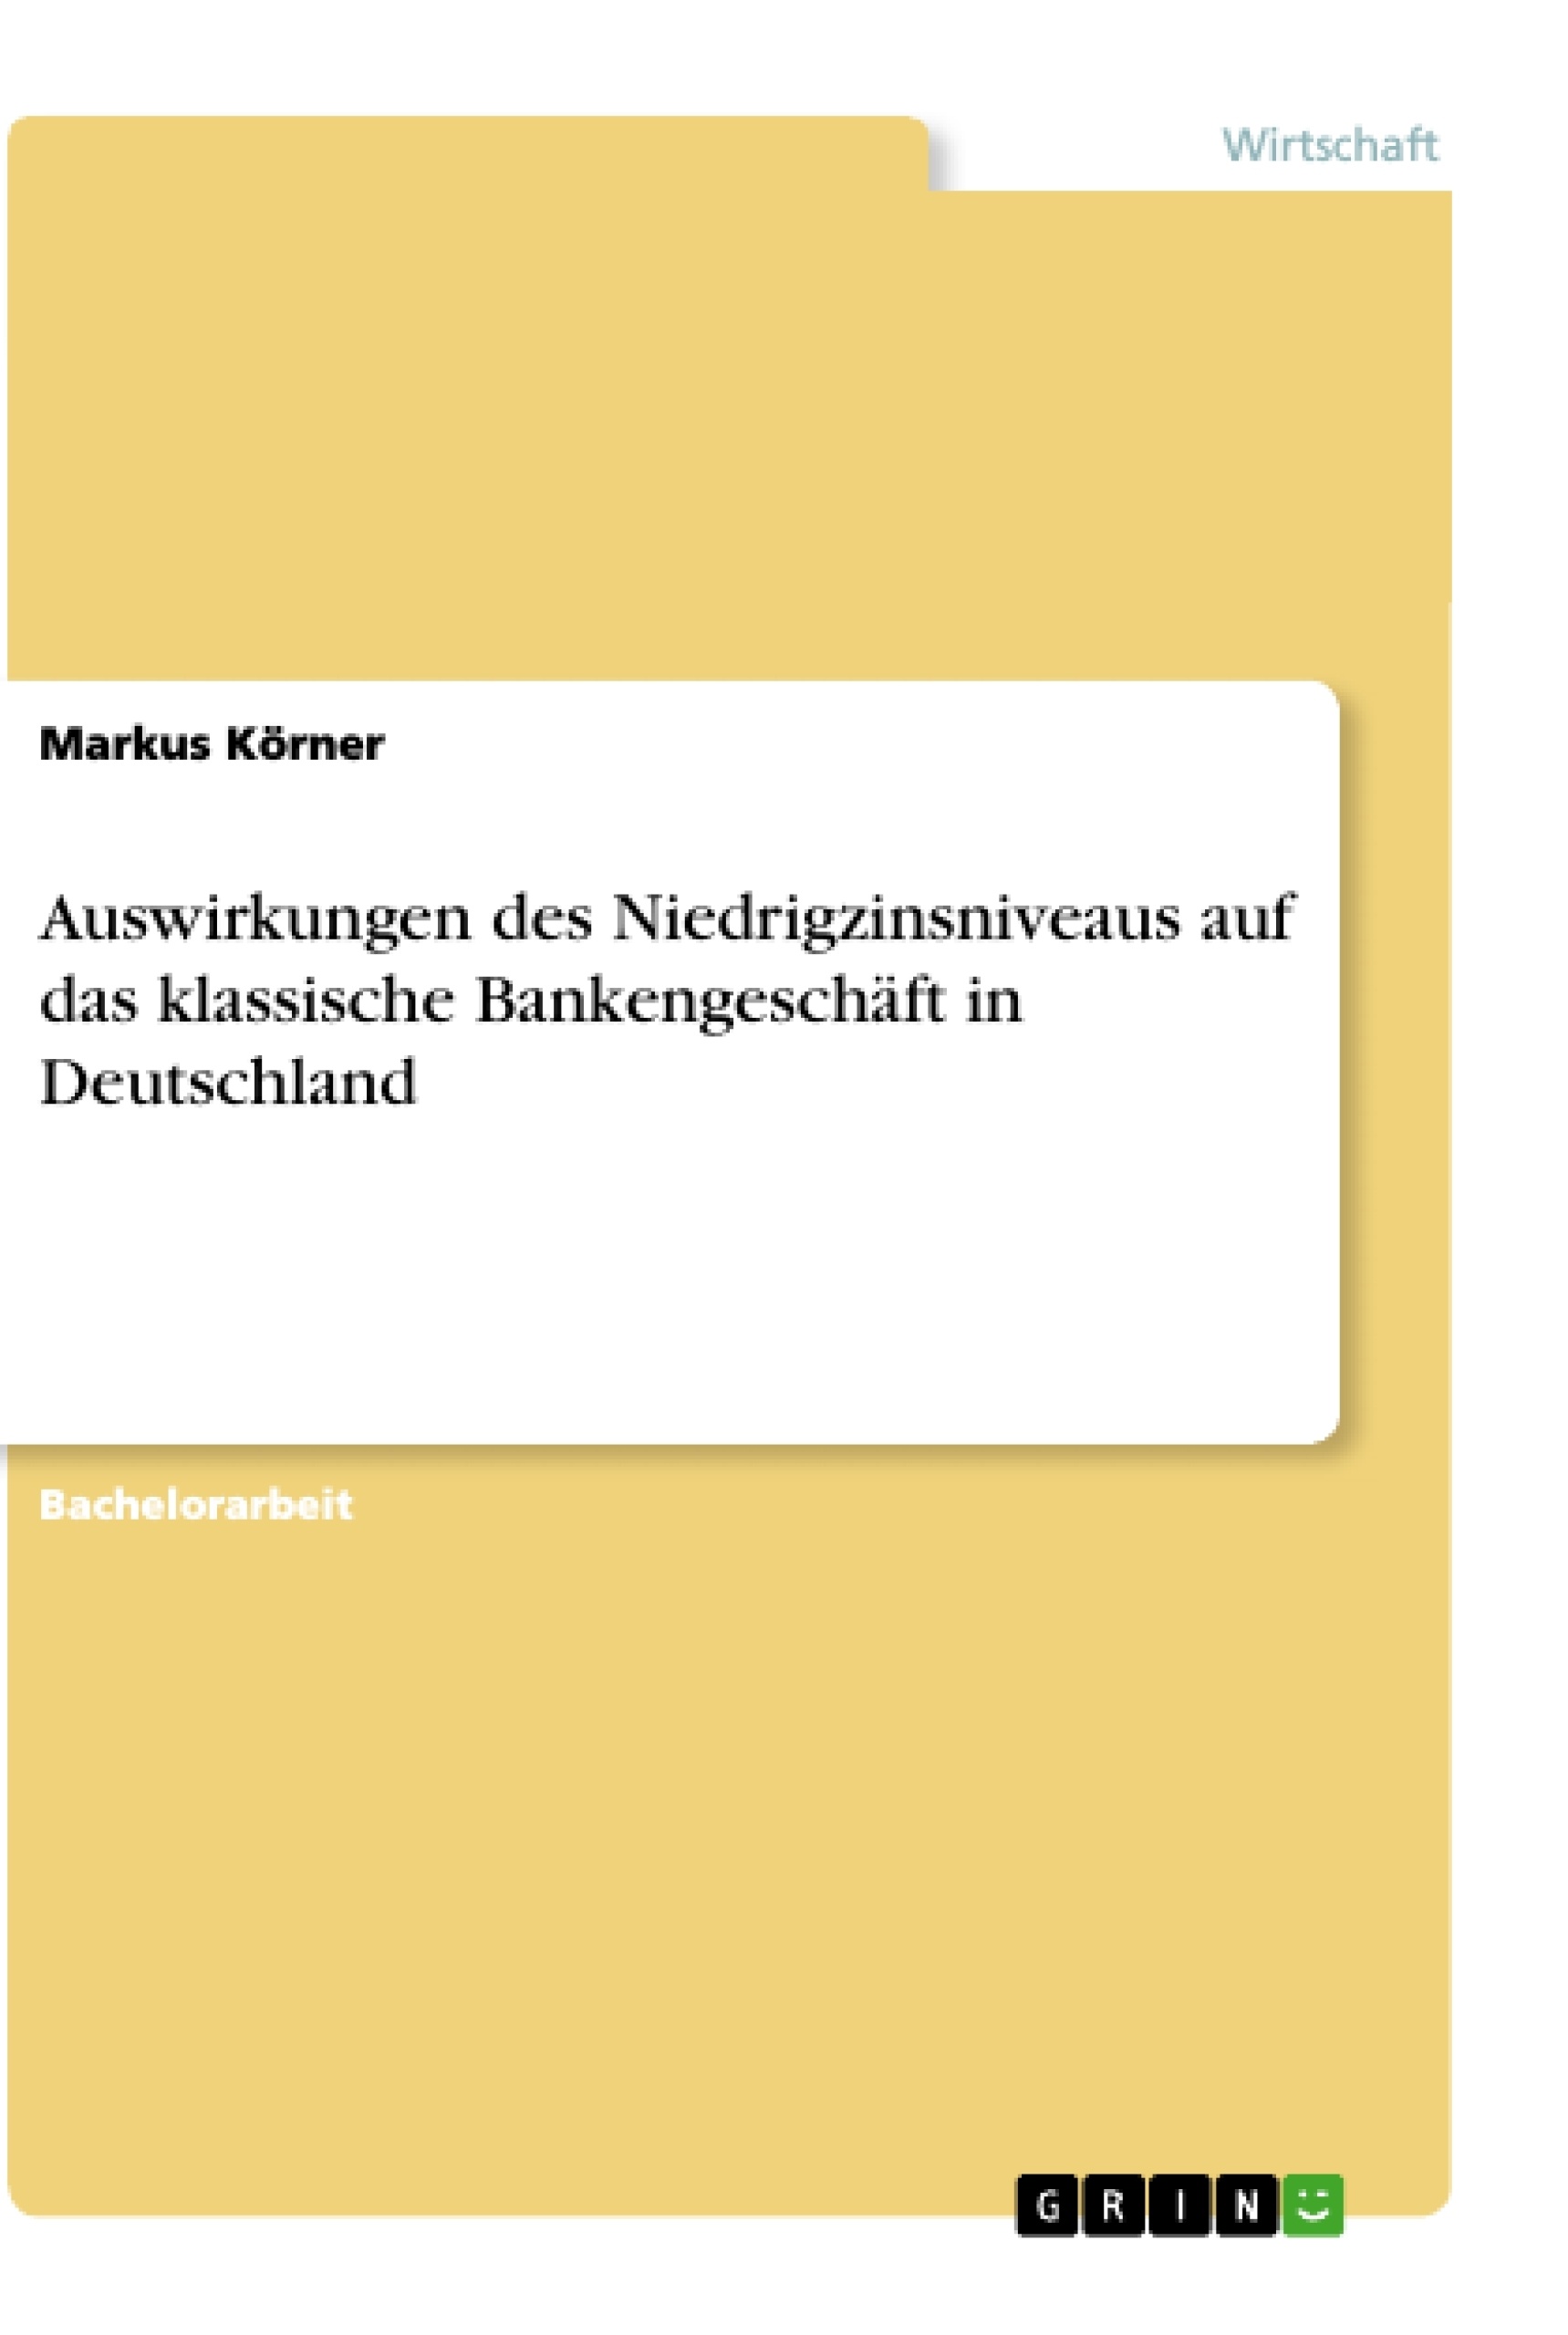 Título: Auswirkungen des Niedrigzinsniveaus auf das klassische Bankengeschäft in Deutschland